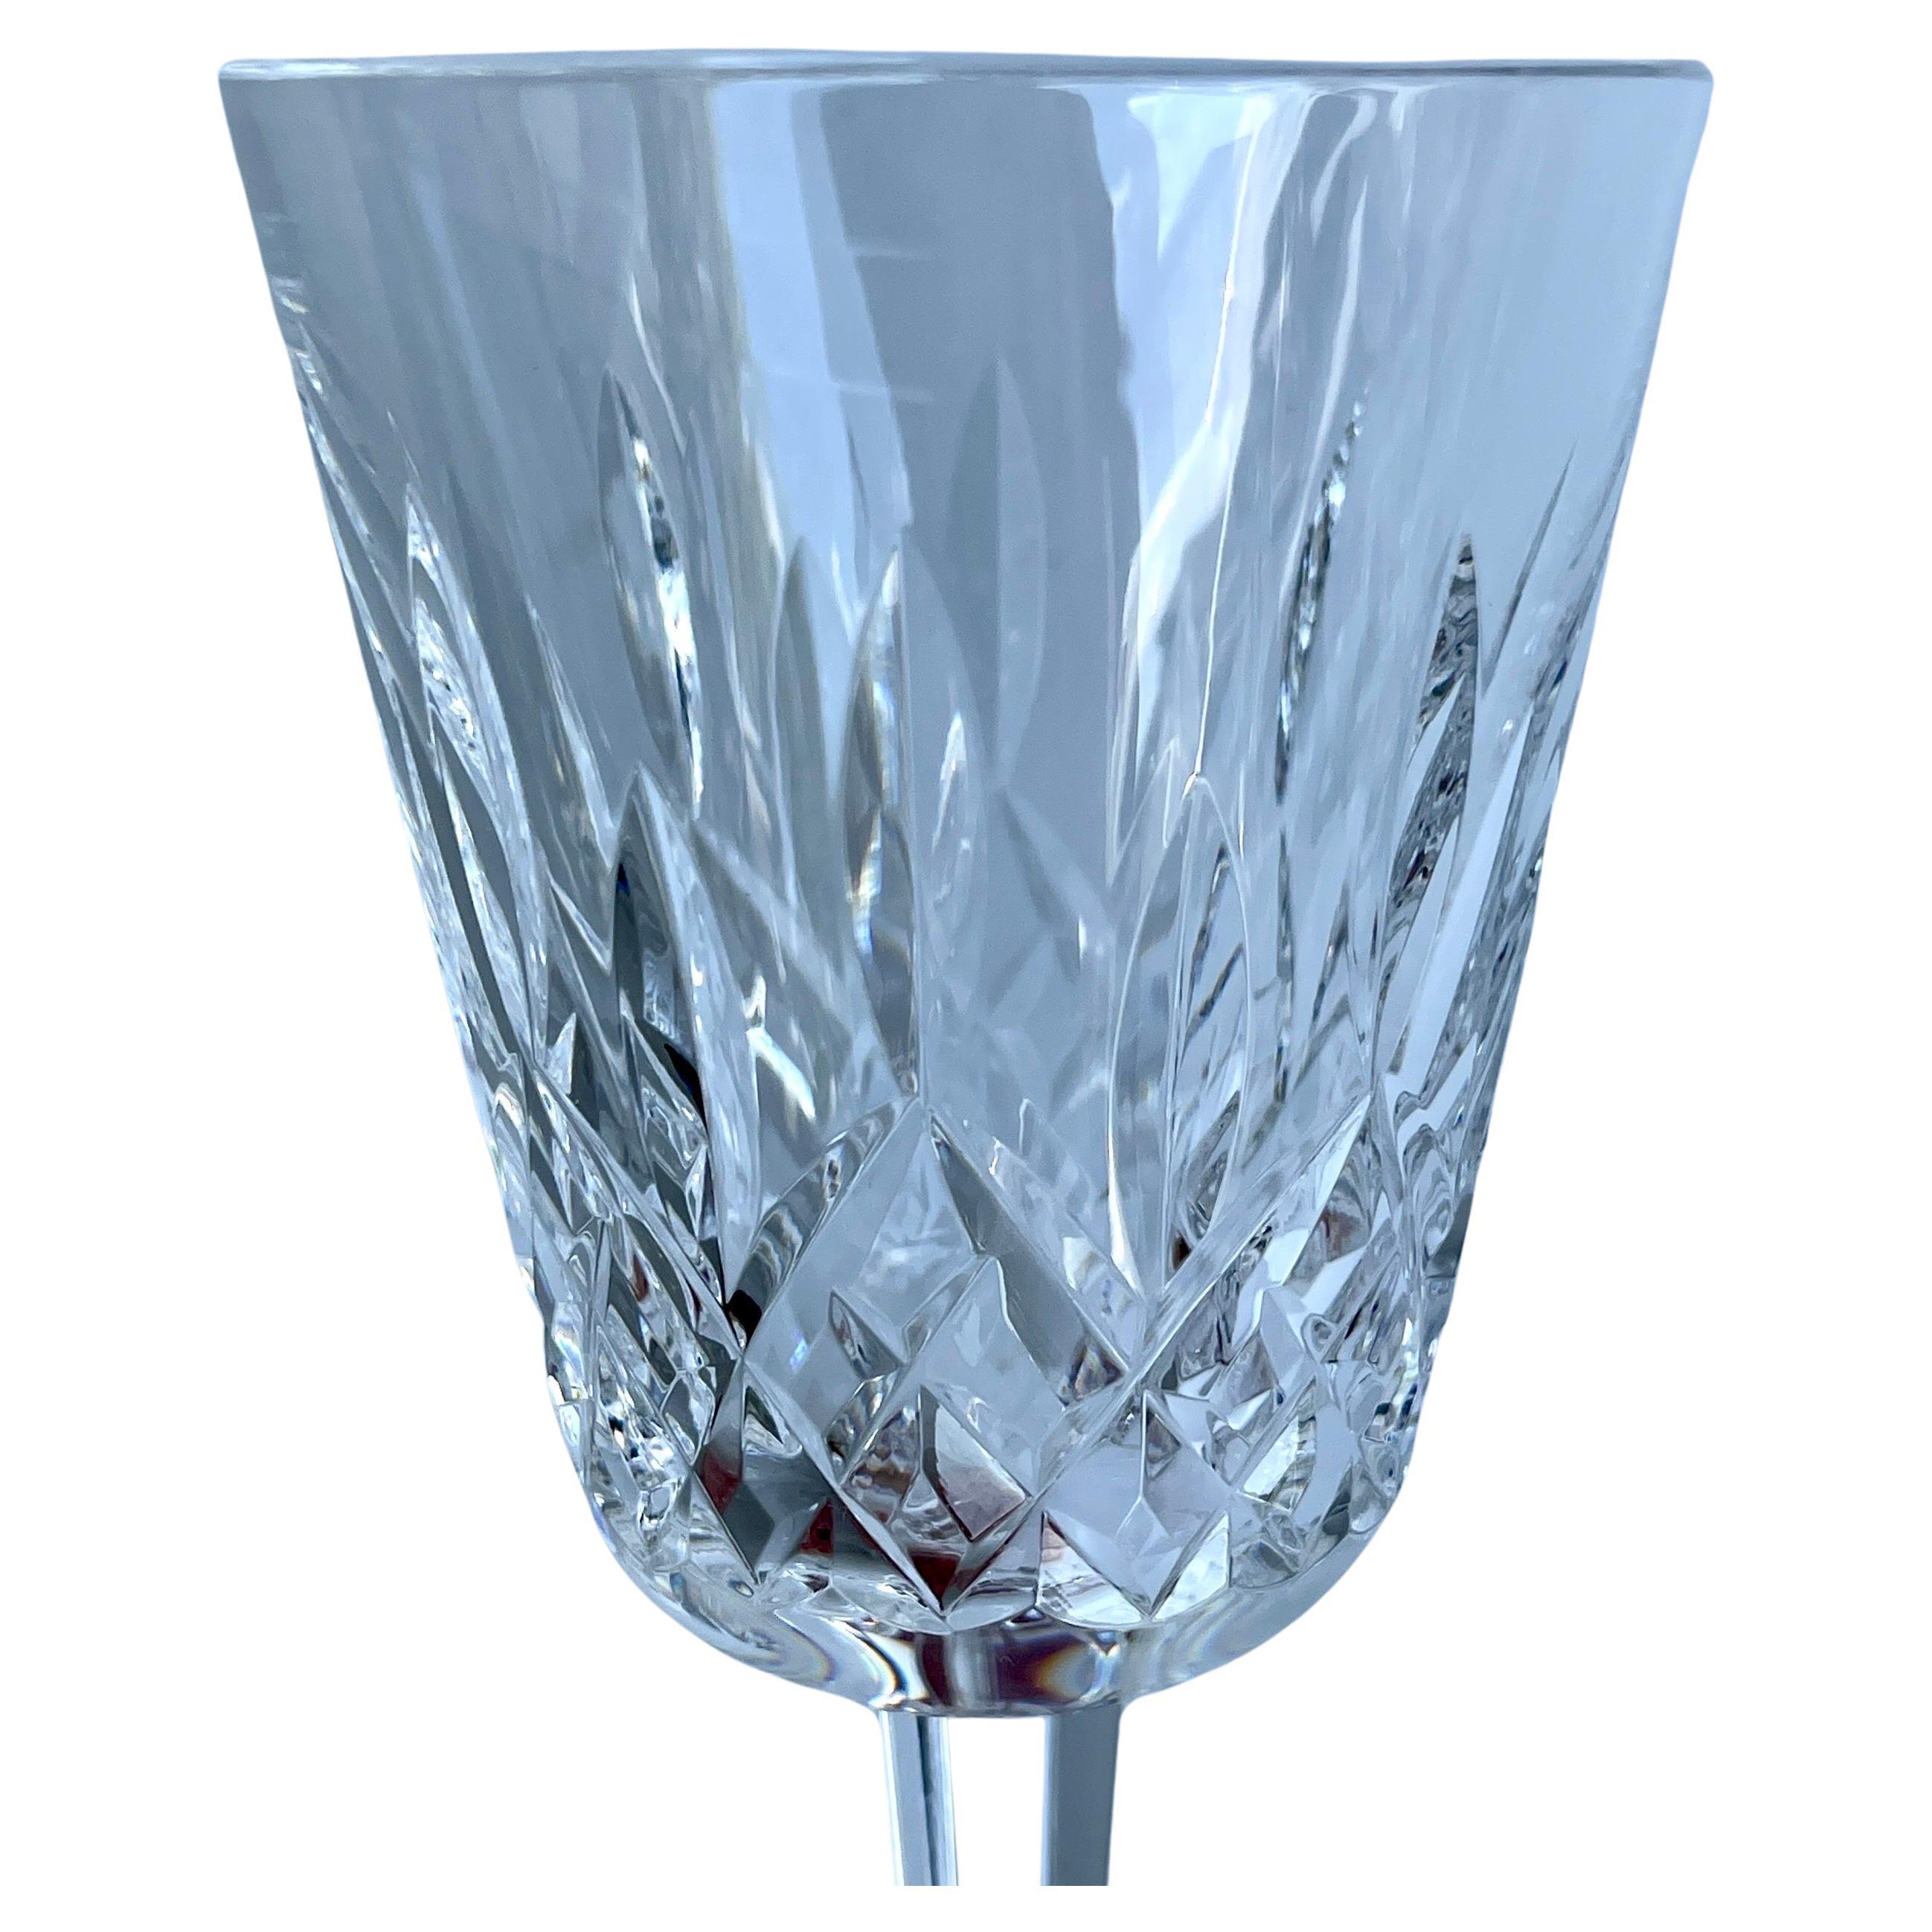 Vintage Lismore Waterford Kristall Kelch Wasser oder Wein Gläser, Satz von 14

Das berühmte Lismore-Muster wurde 1952 von Miroslav Havel, dem Chefdesigner von Waterford, entworfen, der sich für die charakteristischen Rauten- und Keilschliffe des